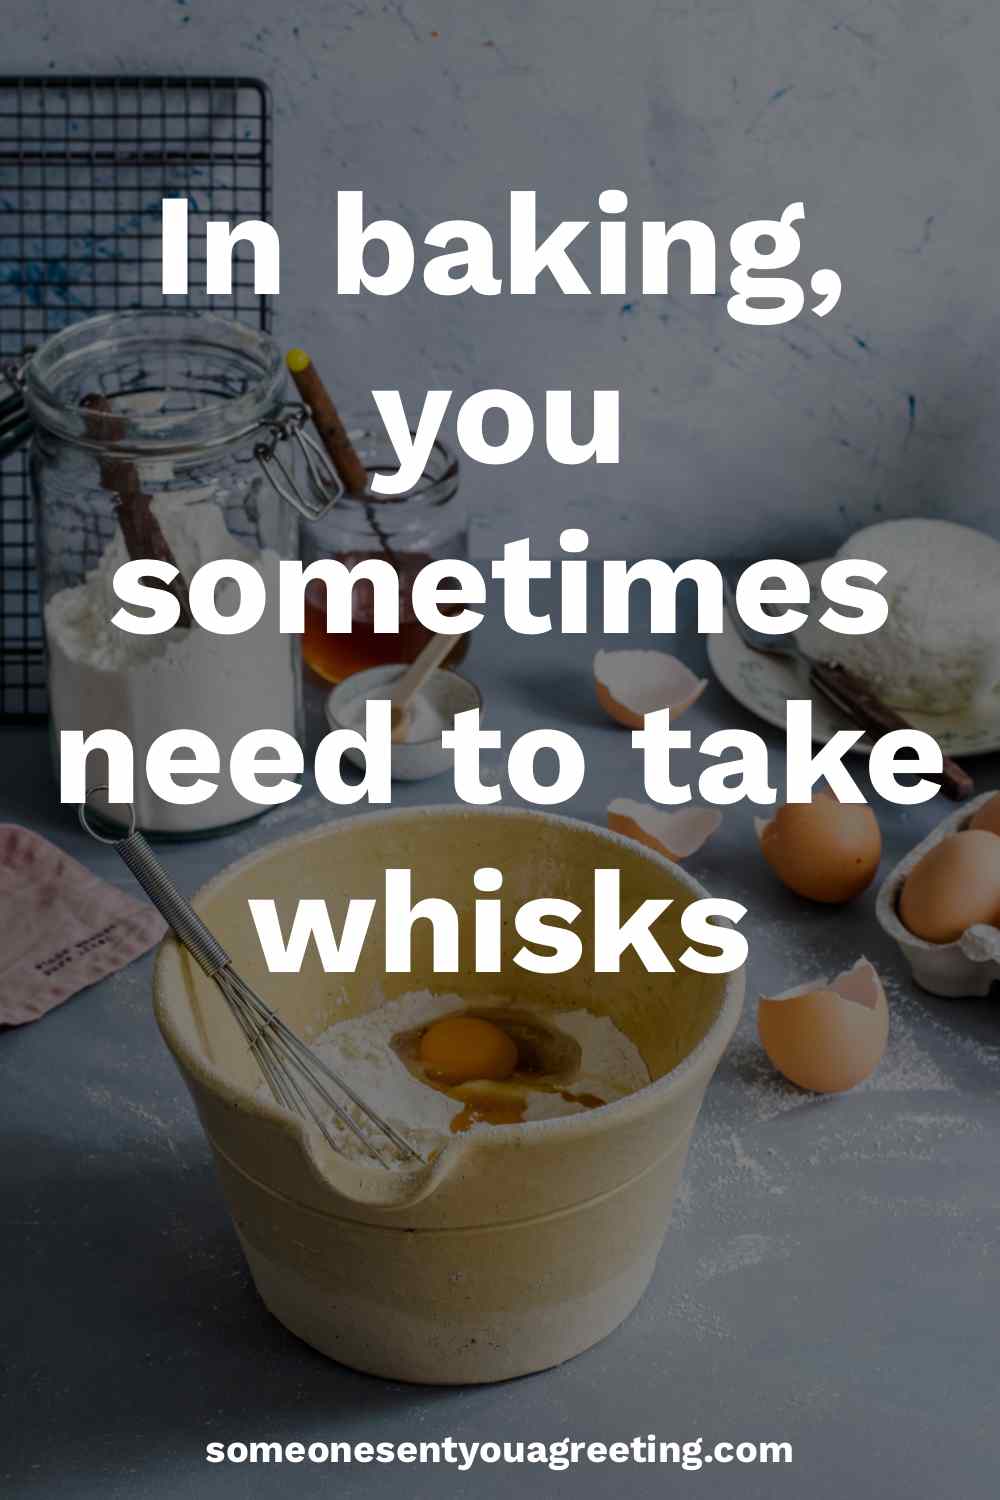 whisk baking pun